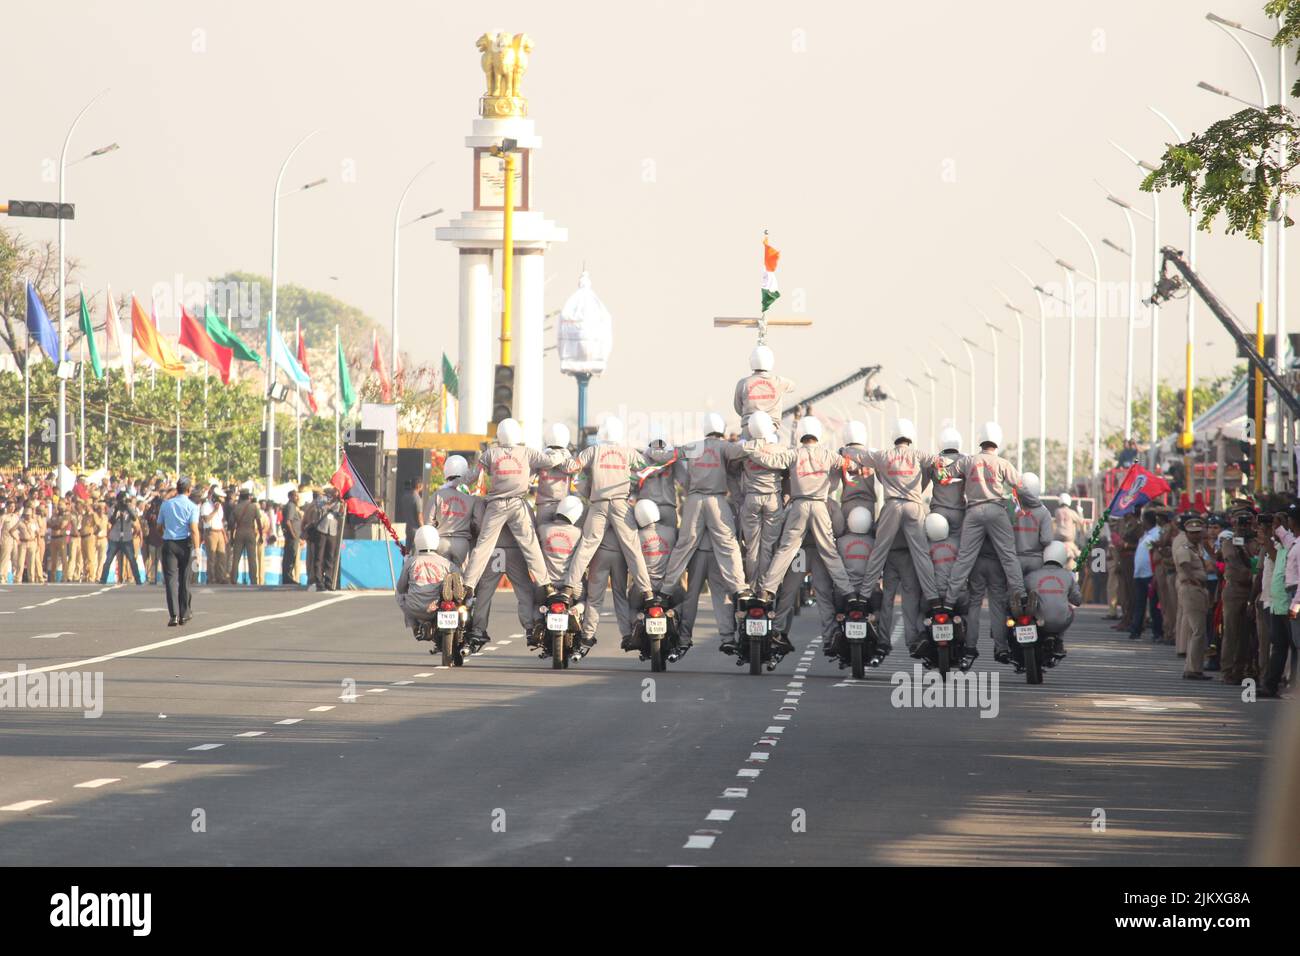 Chennai, Tamilnadu / Indien - Januar 01 2020 : Indische Militär- oder Armeemänner zeigen ihre Fahrkünste bei der Motorradrally auf Fahrrädern, Indiens repub Stockfoto